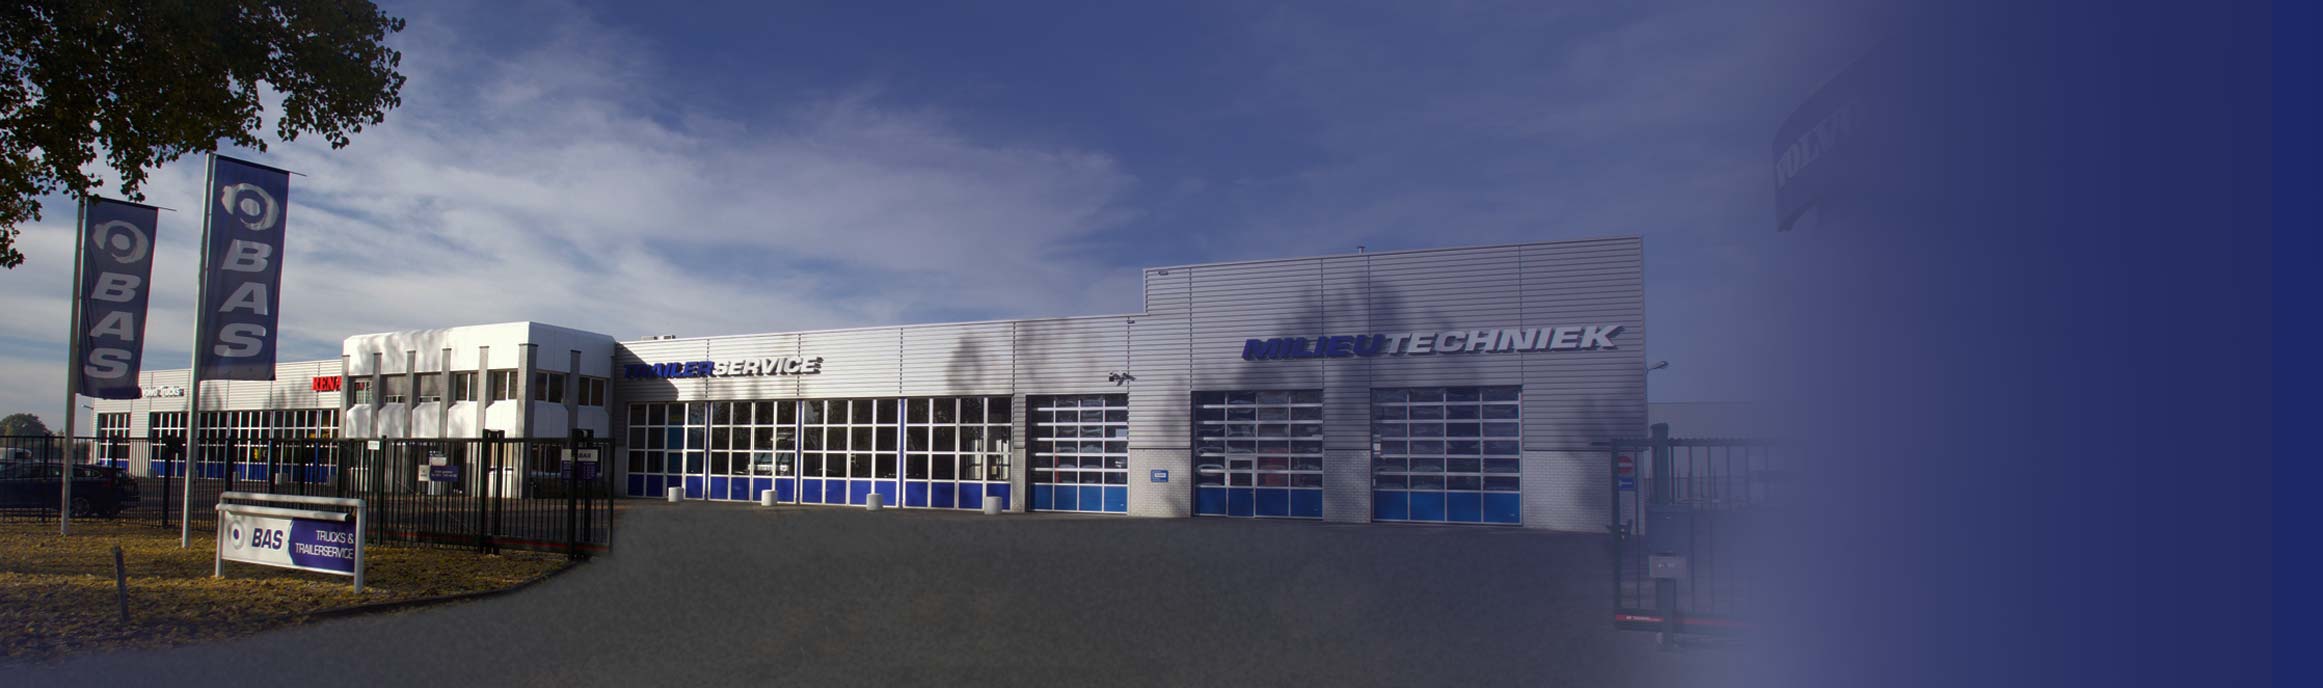 BAS Truck Center vestiging Nijmegen